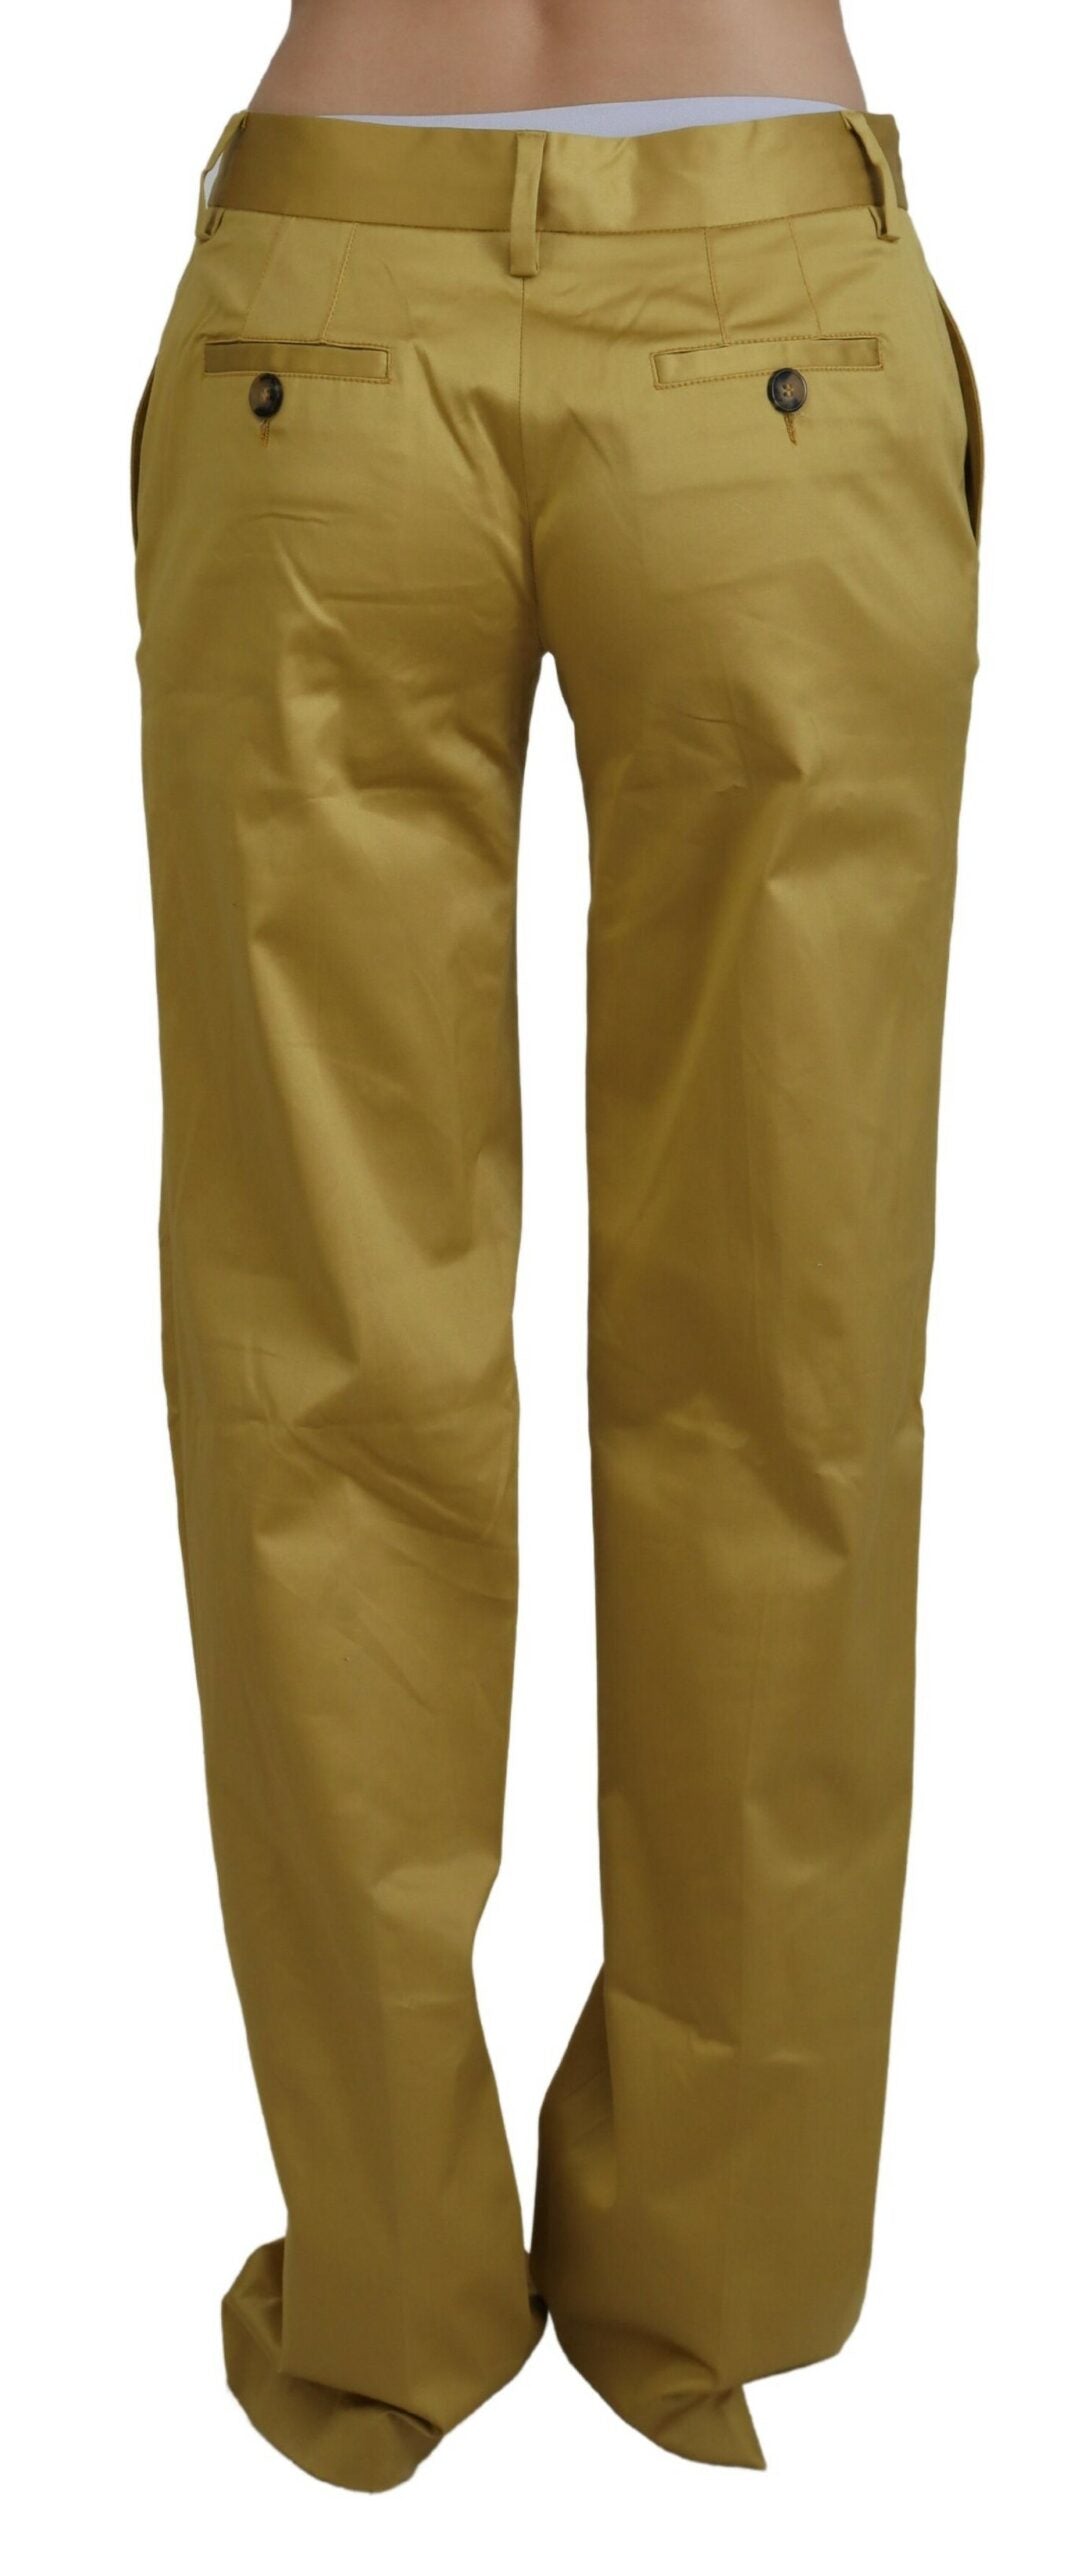 Дамски панталон Just Cavalli Gold Cotton със средна талия